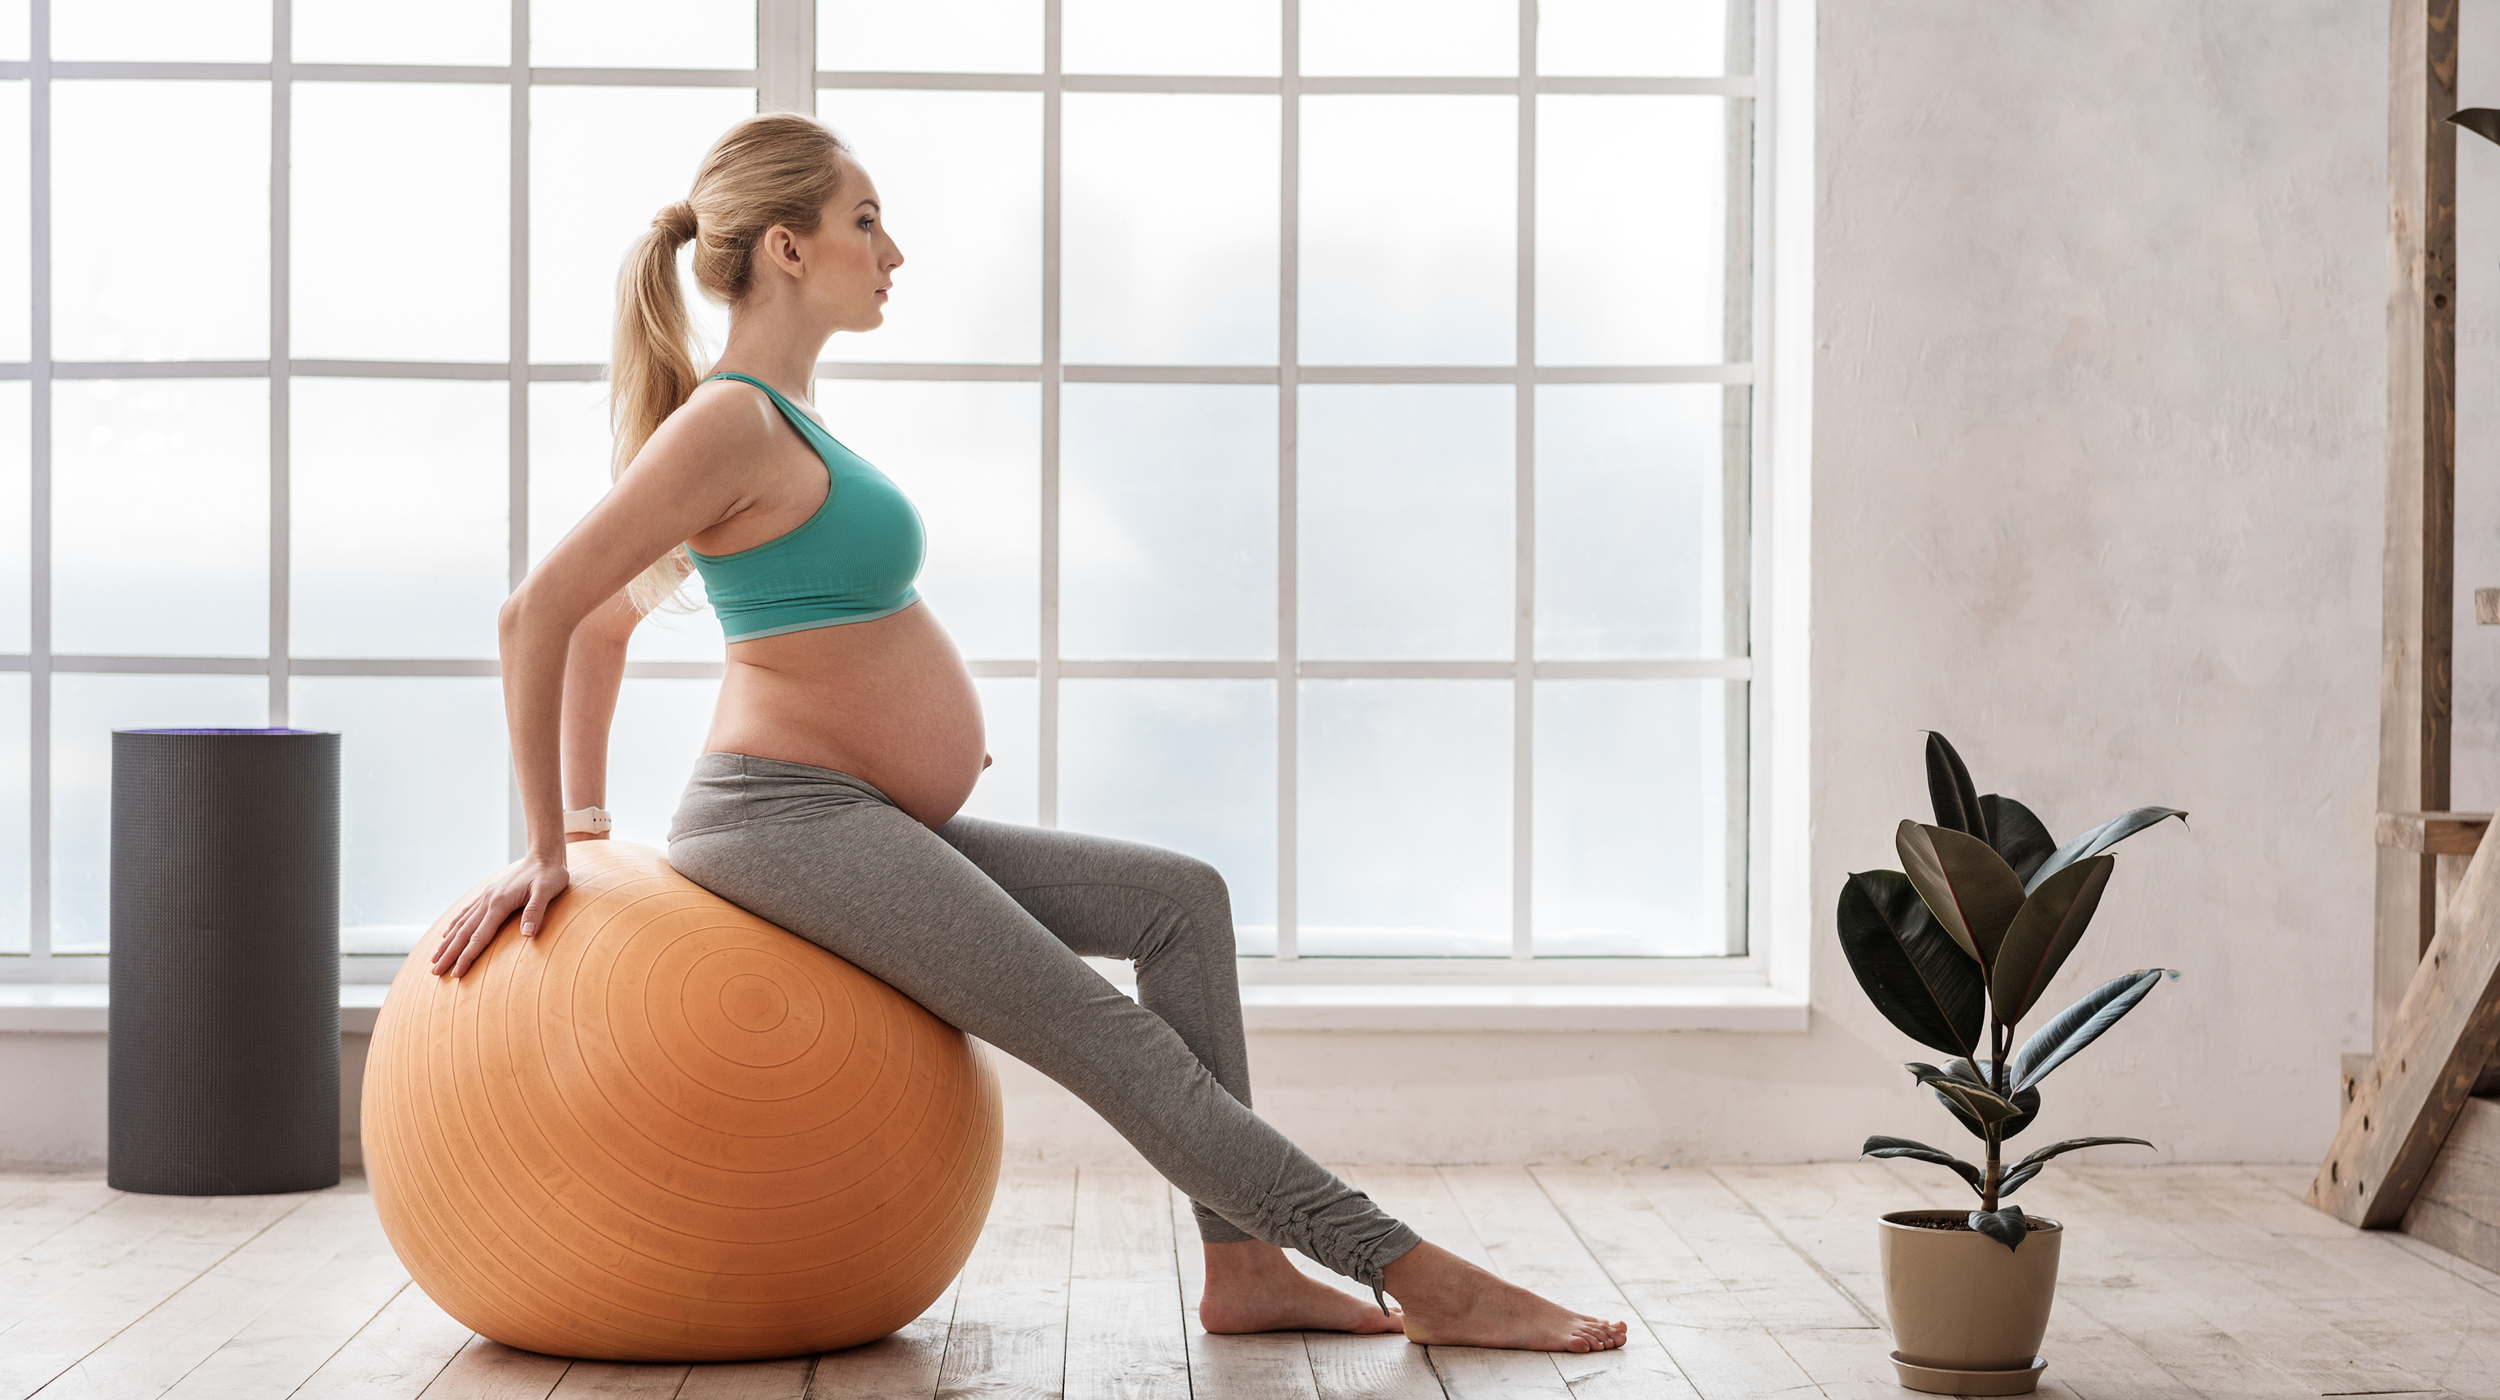 Body by Simone- Prenatal Workout DVD Pregnancy Workout Program